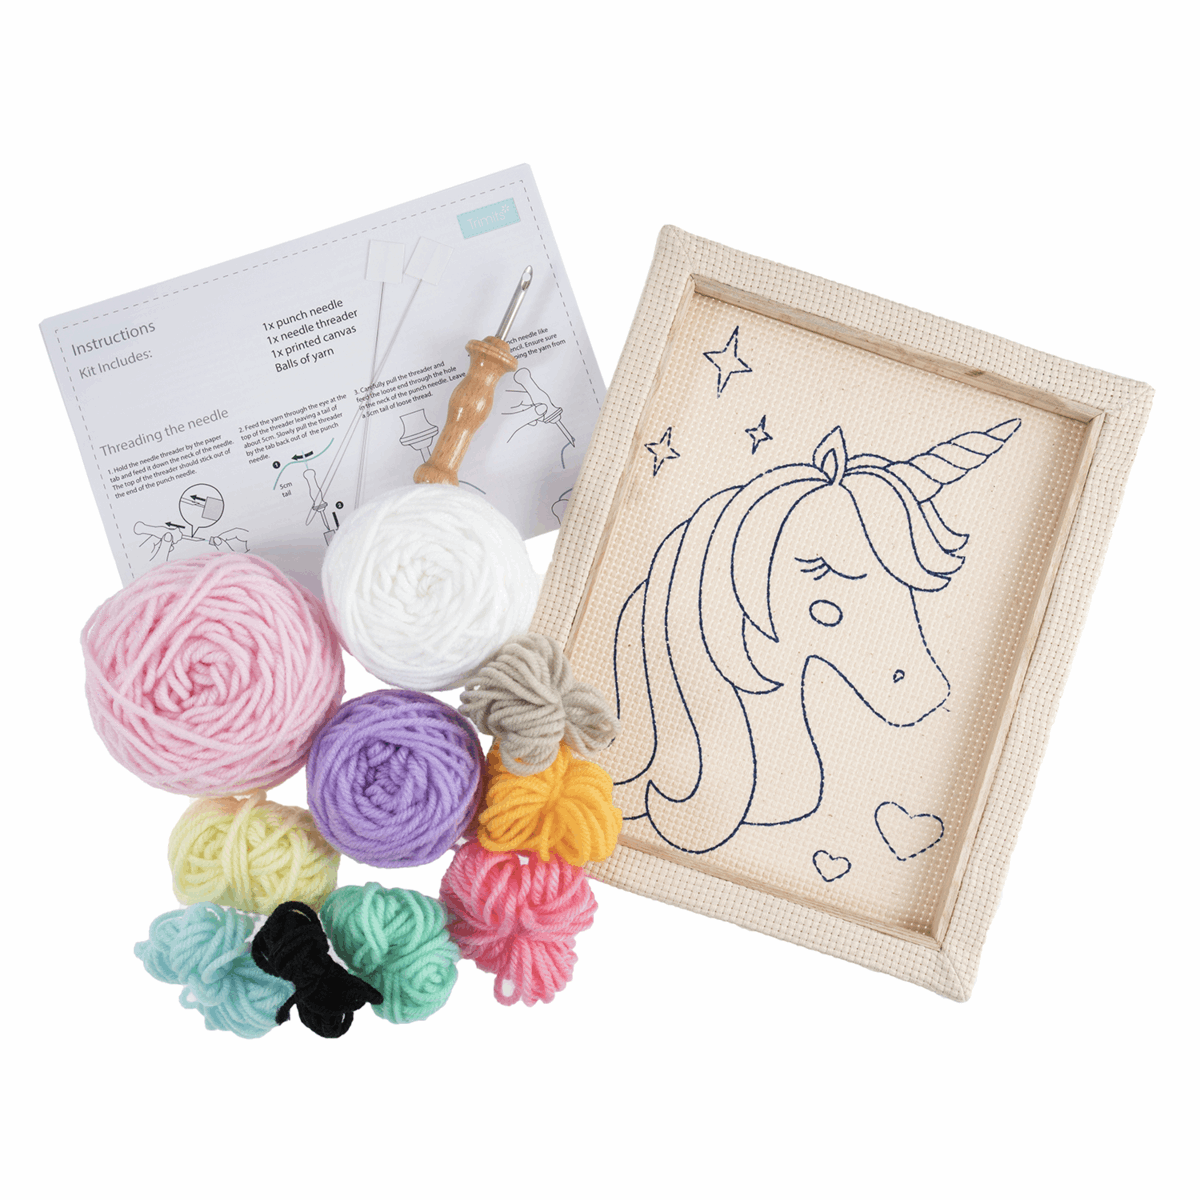 Unicorn Punch Needle Kit By Trimits - Wish I Were Stitching